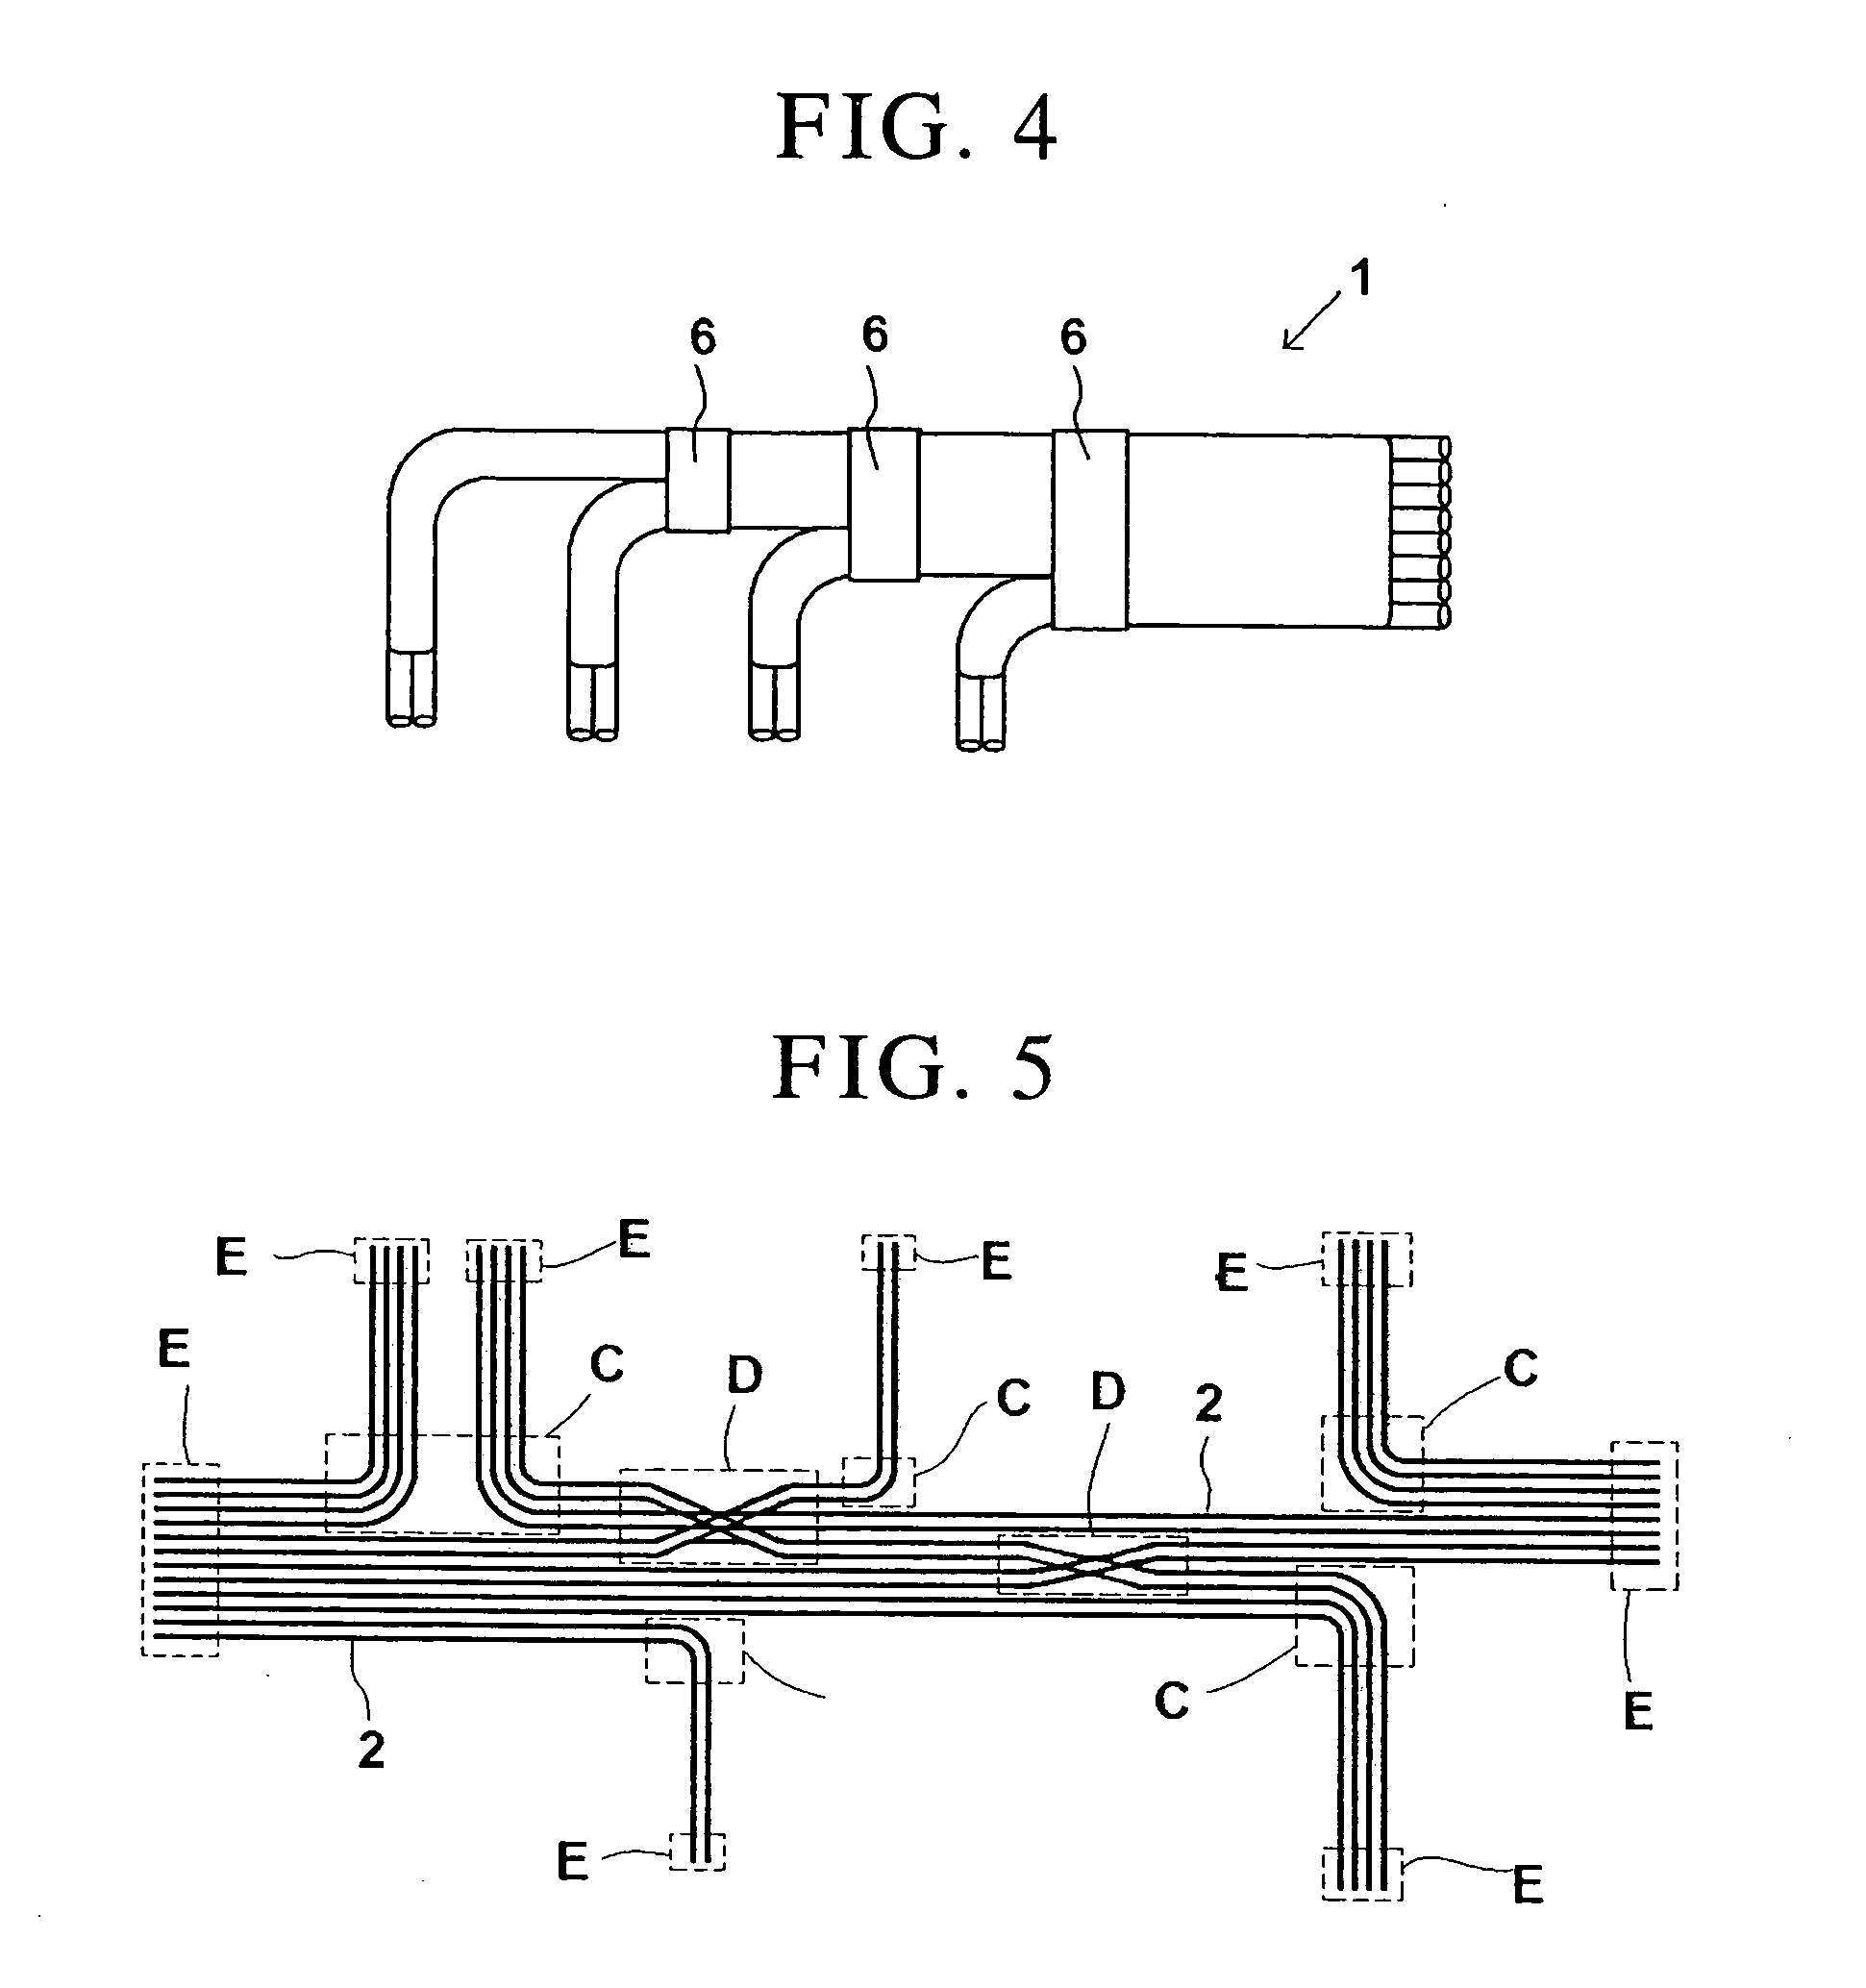 Fiber wiring sheet and method of manufacturing same